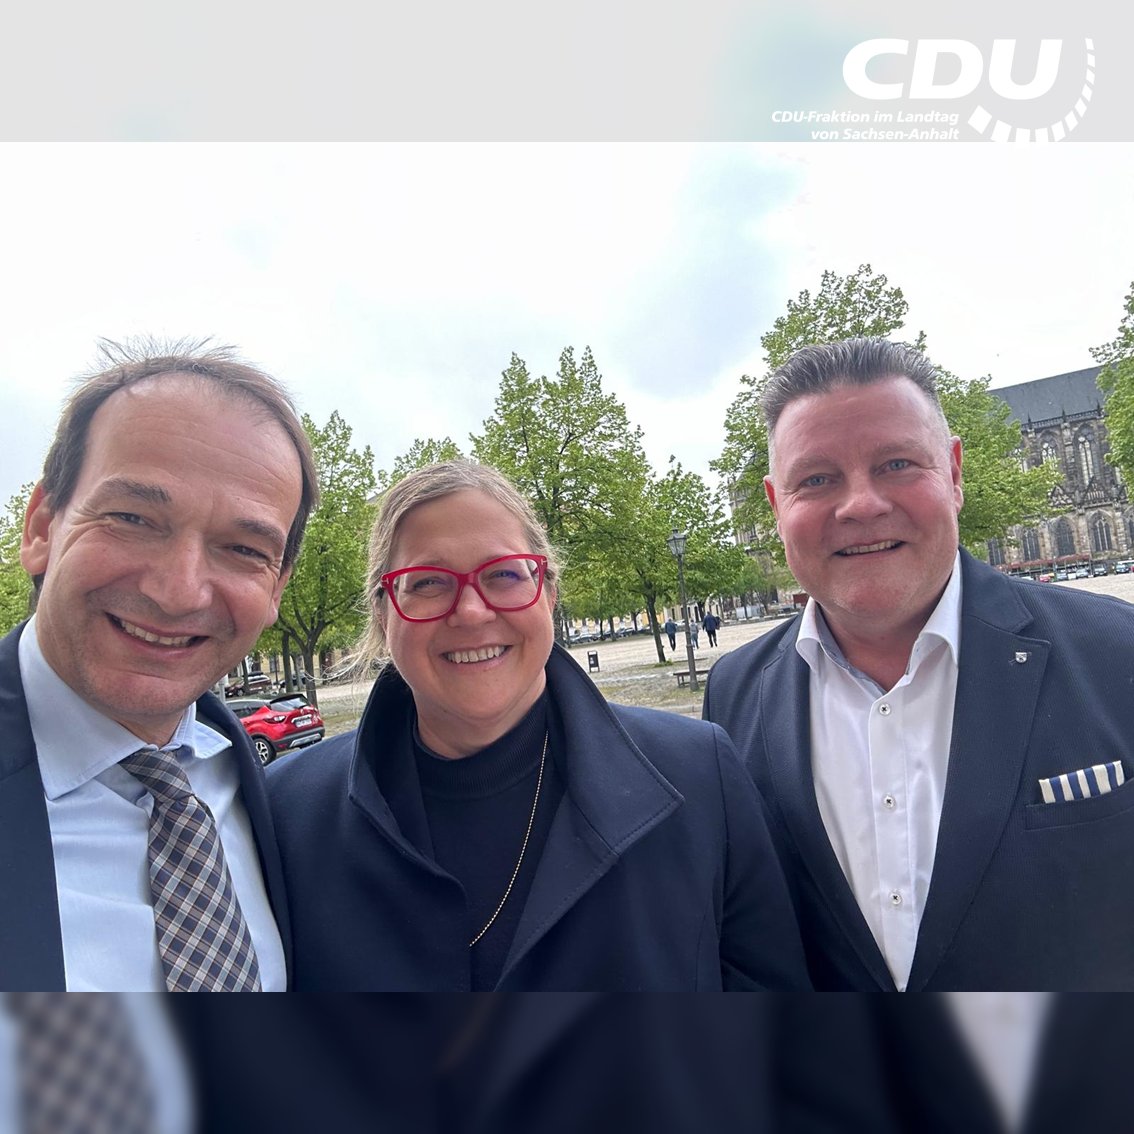 „Der #Datenschutz hat in Sachsen-Anhalt wieder eine starke Stimme“, sagt der Fraktionsvorsitzende @GuidoHeuer und gratuliert Maria Christina Rost zur Wahl zur Landesdatenschutzbeauftragten. Mehr dazu unter: cdufraktion.de/2024/heuer-dat…